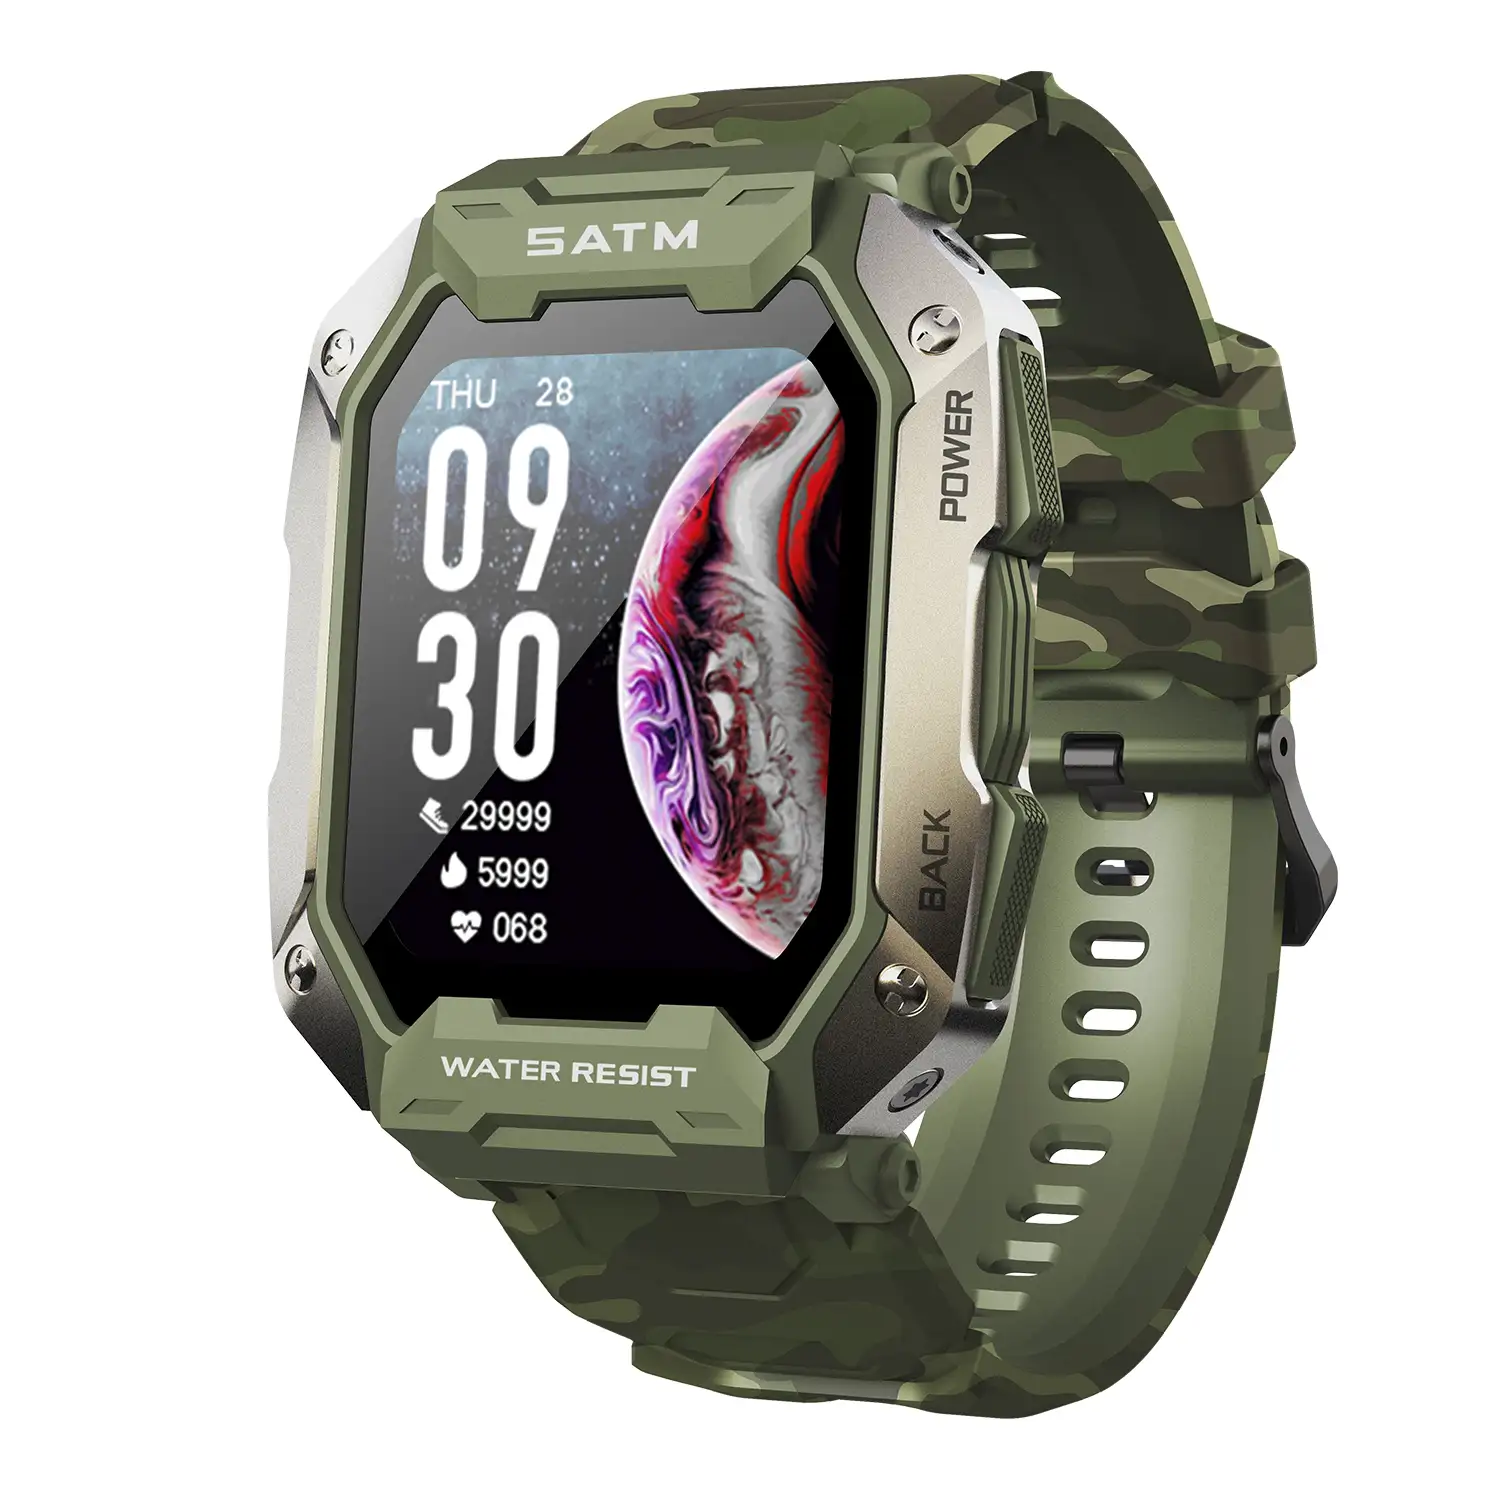 Smartwatch C20 sumergible, pantalla de 1,7 pulgadas y 24 modos deportivos. Monitor cardiaco y de O2.